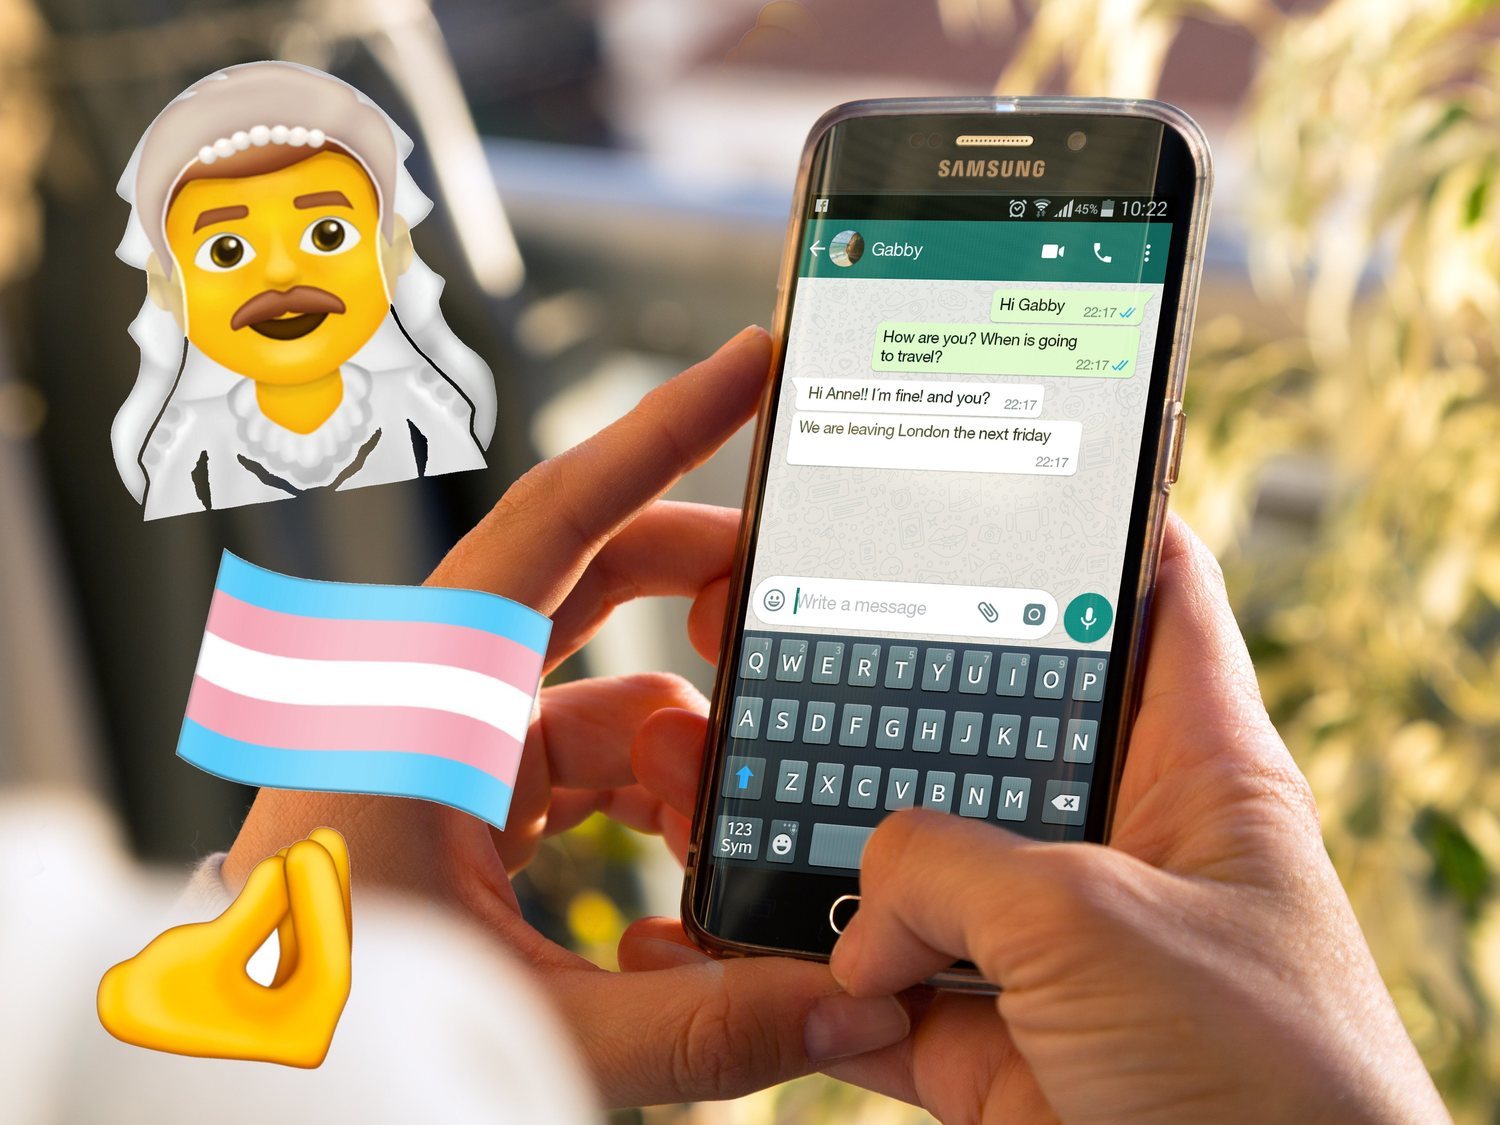 Hombres vestidos de novia, ninjas, mamuts y la bandera trans: nuevos emojis en WhatsApp